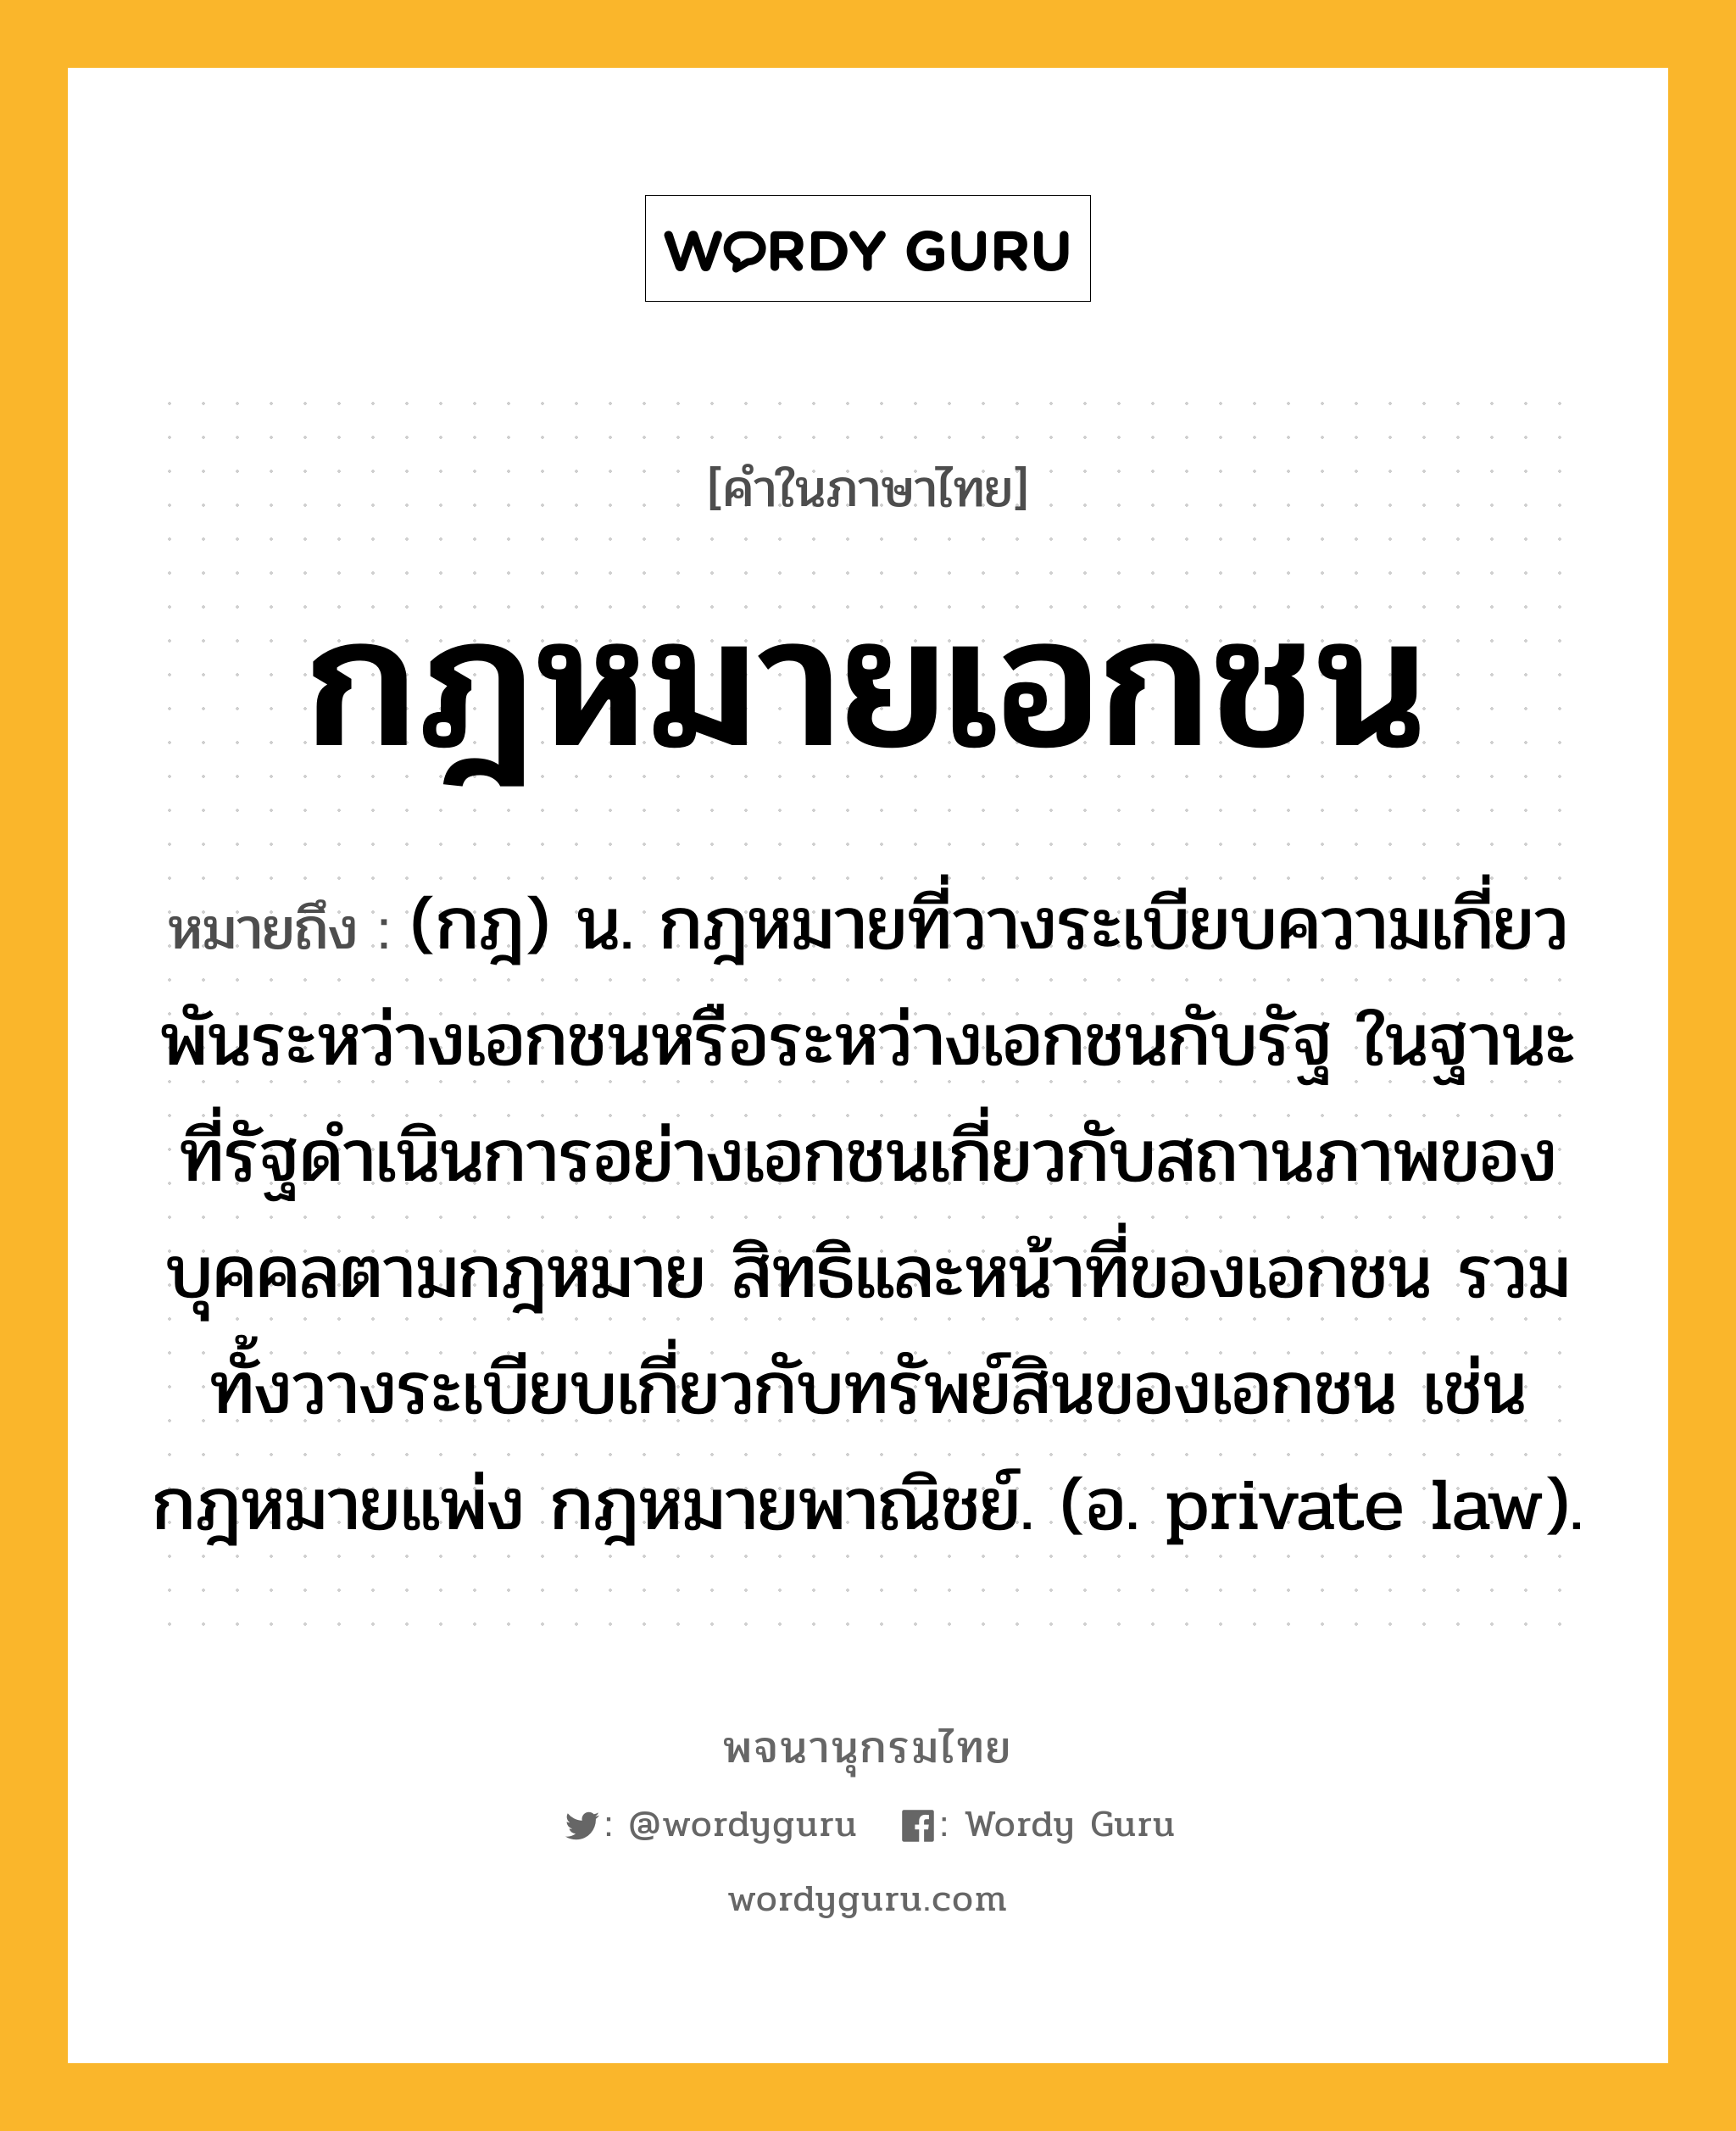 กฎหมายเอกชน หมายถึงอะไร?, คำในภาษาไทย กฎหมายเอกชน หมายถึง (กฎ) น. กฎหมายที่วางระเบียบความเกี่ยวพันระหว่างเอกชนหรือระหว่างเอกชนกับรัฐ ในฐานะที่รัฐดำเนินการอย่างเอกชนเกี่ยวกับสถานภาพของบุคคลตามกฎหมาย สิทธิและหน้าที่ของเอกชน รวมทั้งวางระเบียบเกี่ยวกับทรัพย์สินของเอกชน เช่น กฎหมายแพ่ง กฎหมายพาณิชย์. (อ. private law).